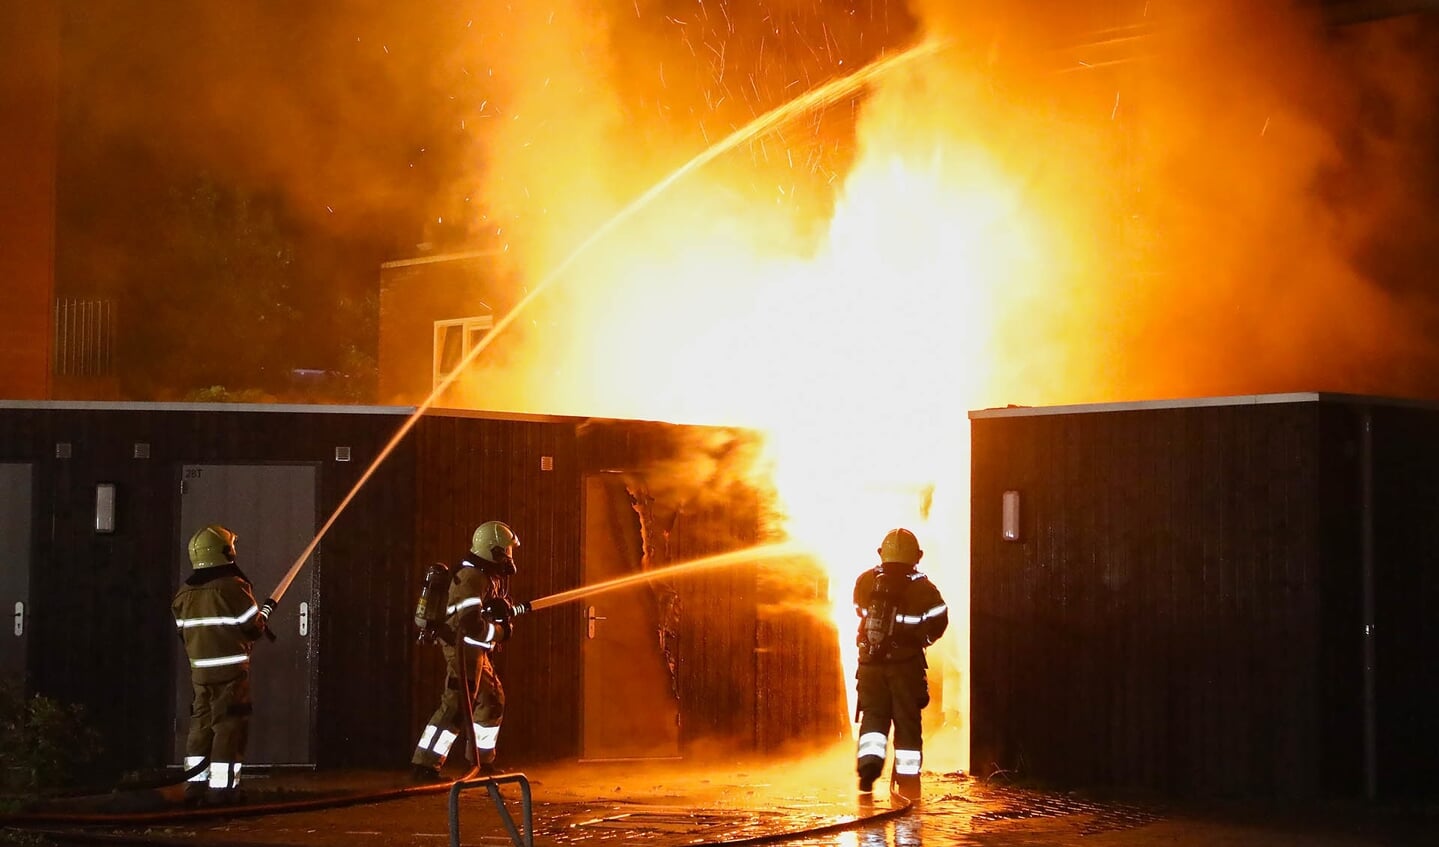 Appartementen in Berghemseweg verwoest door brand. (Foto: Gabor Heeres / Foto Mallo)